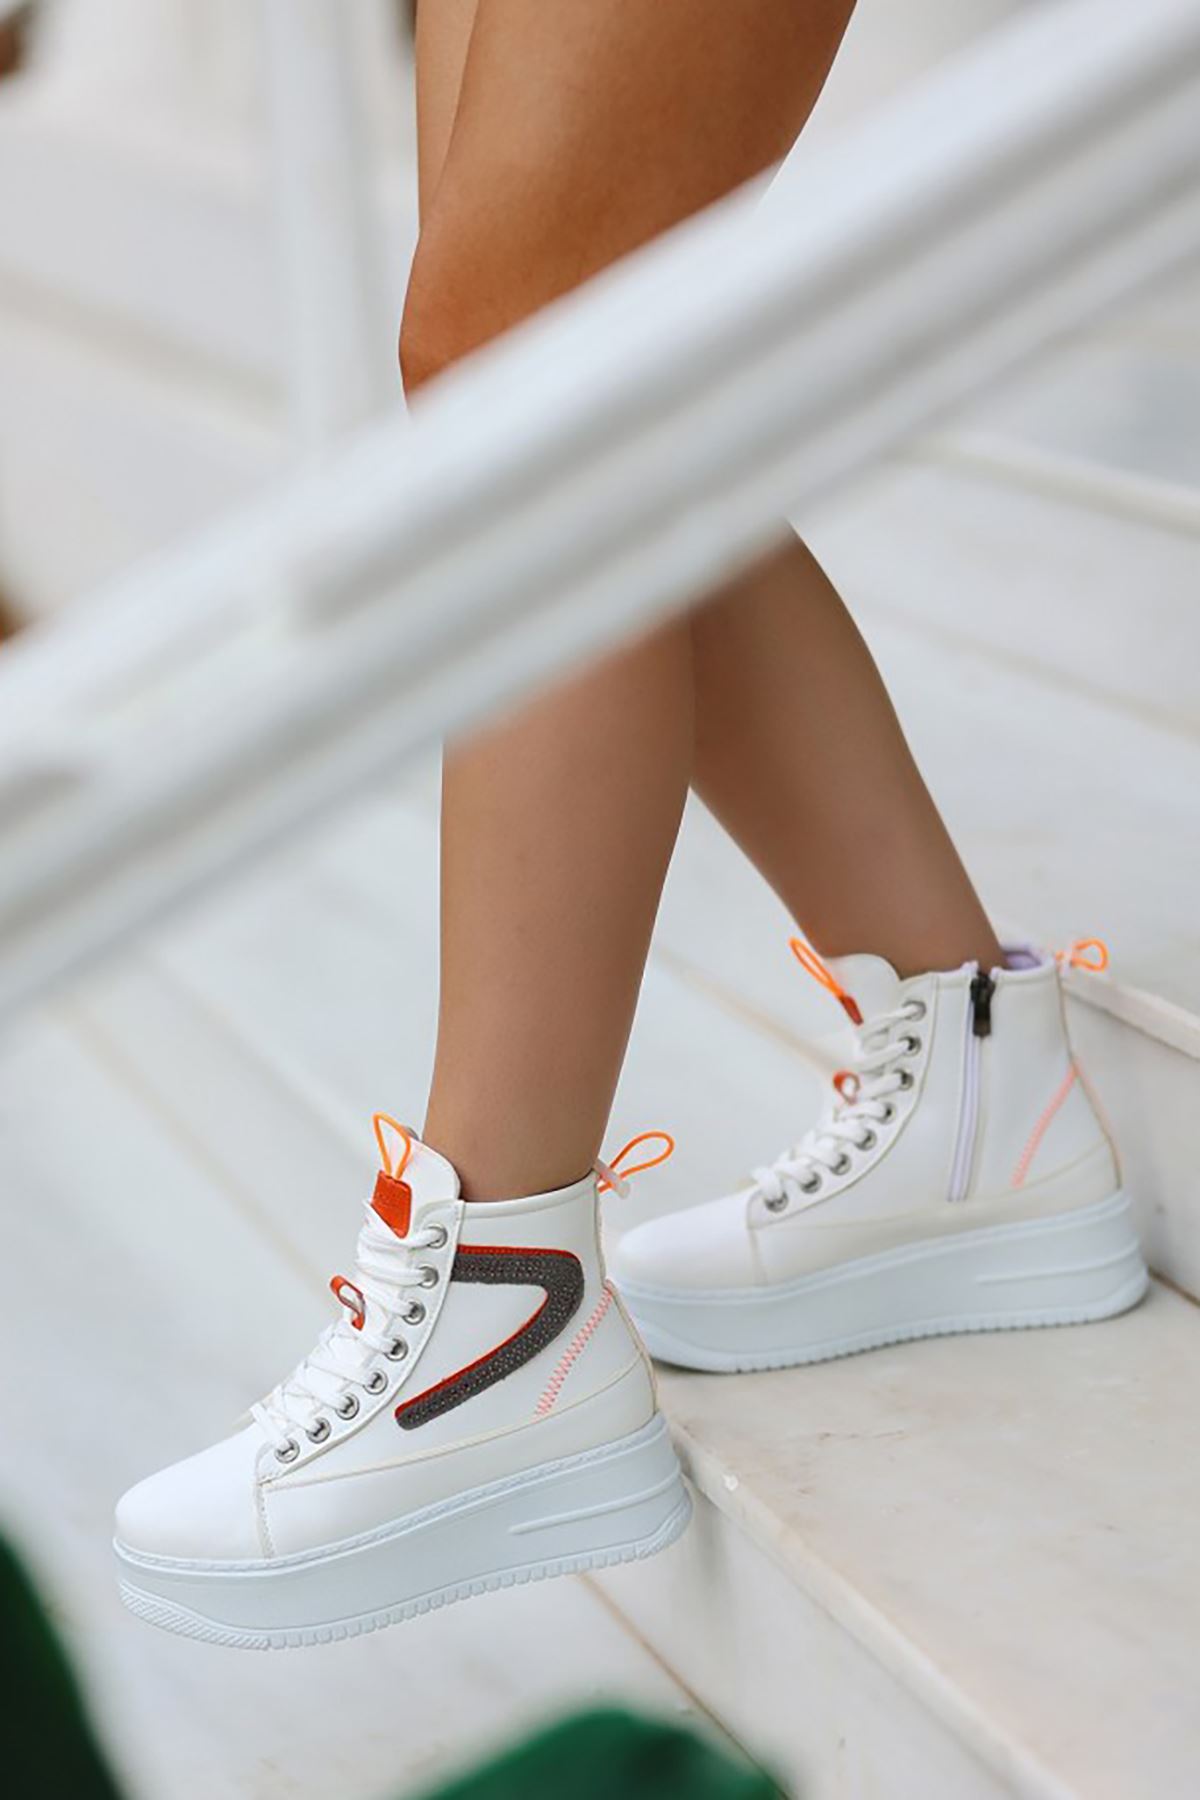 Mida Shoes ERBPone Beyaz Turuncu Detaylı Deri Bağcıklı Kadın Spor Bot